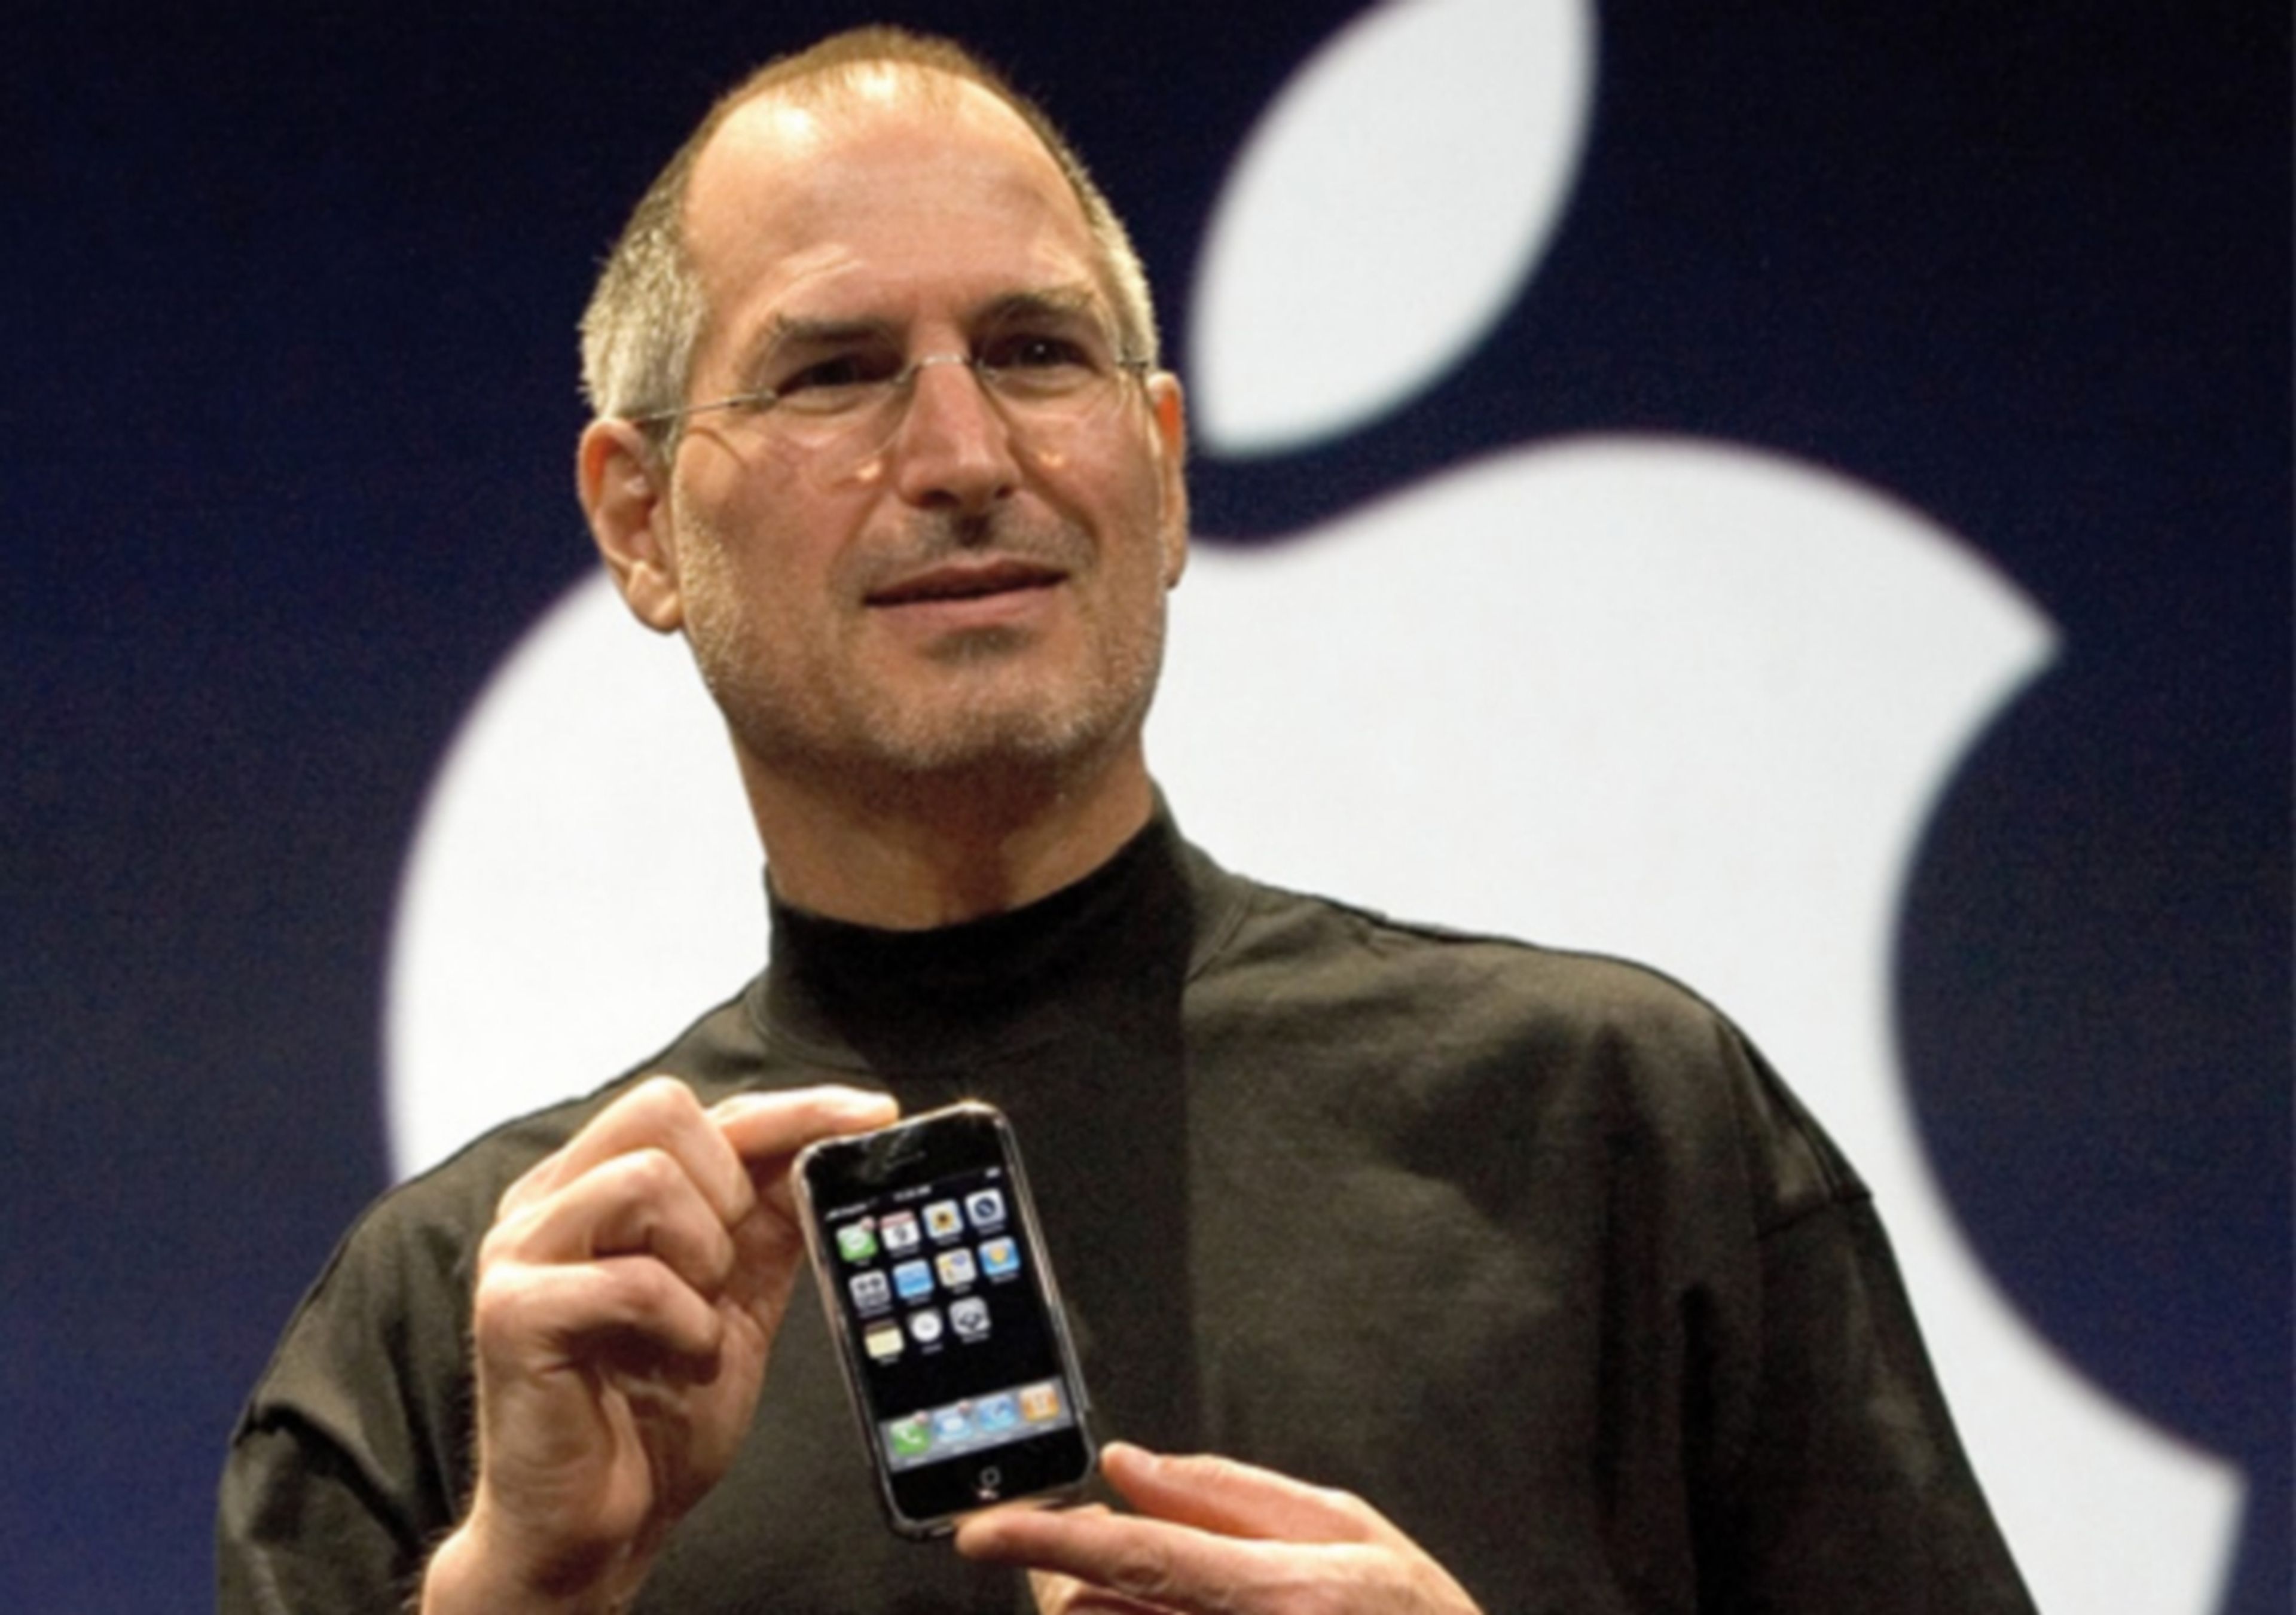 Steve Jobs recibe la Medalla de la Libertad de Estados Unidos a título póstumo, el más alto honor a un civil